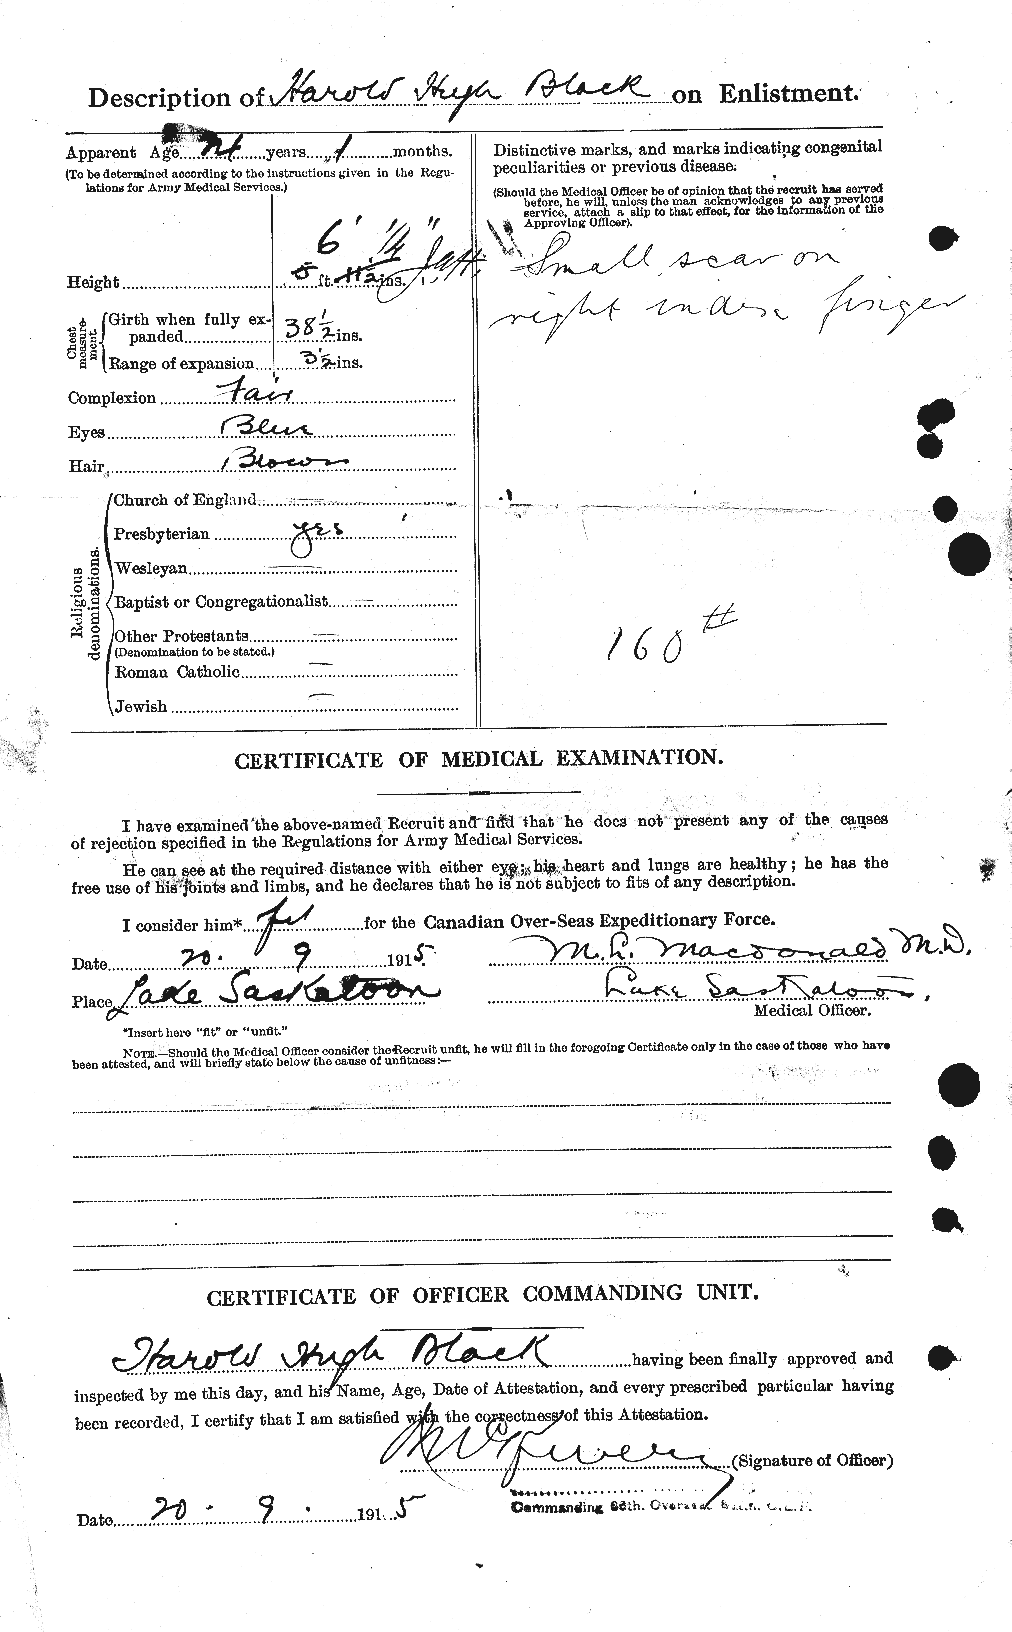 Dossiers du Personnel de la Première Guerre mondiale - CEC 241391b